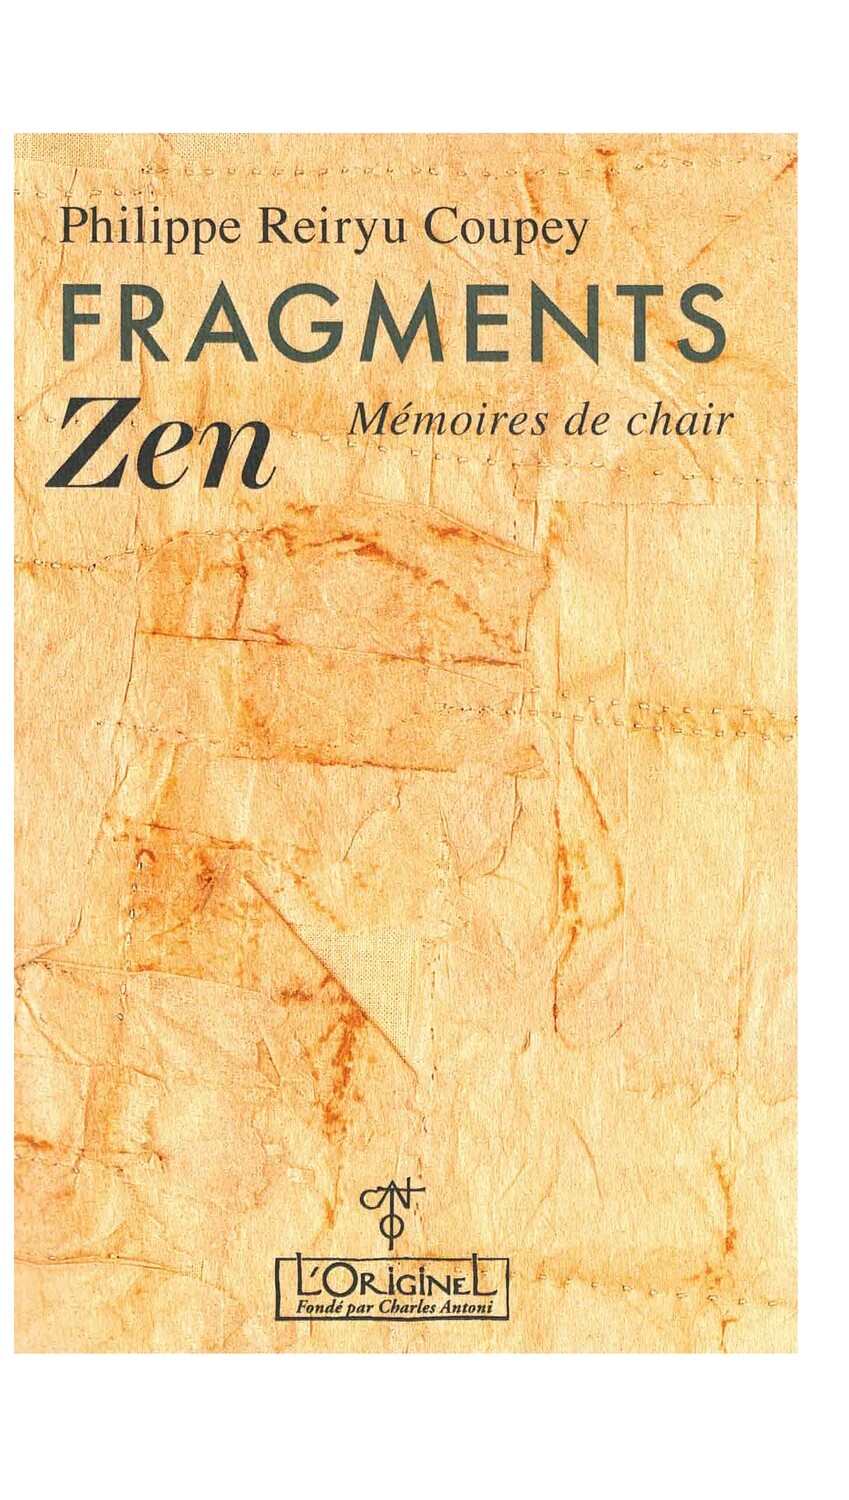 Fragments Zen memoires de chair